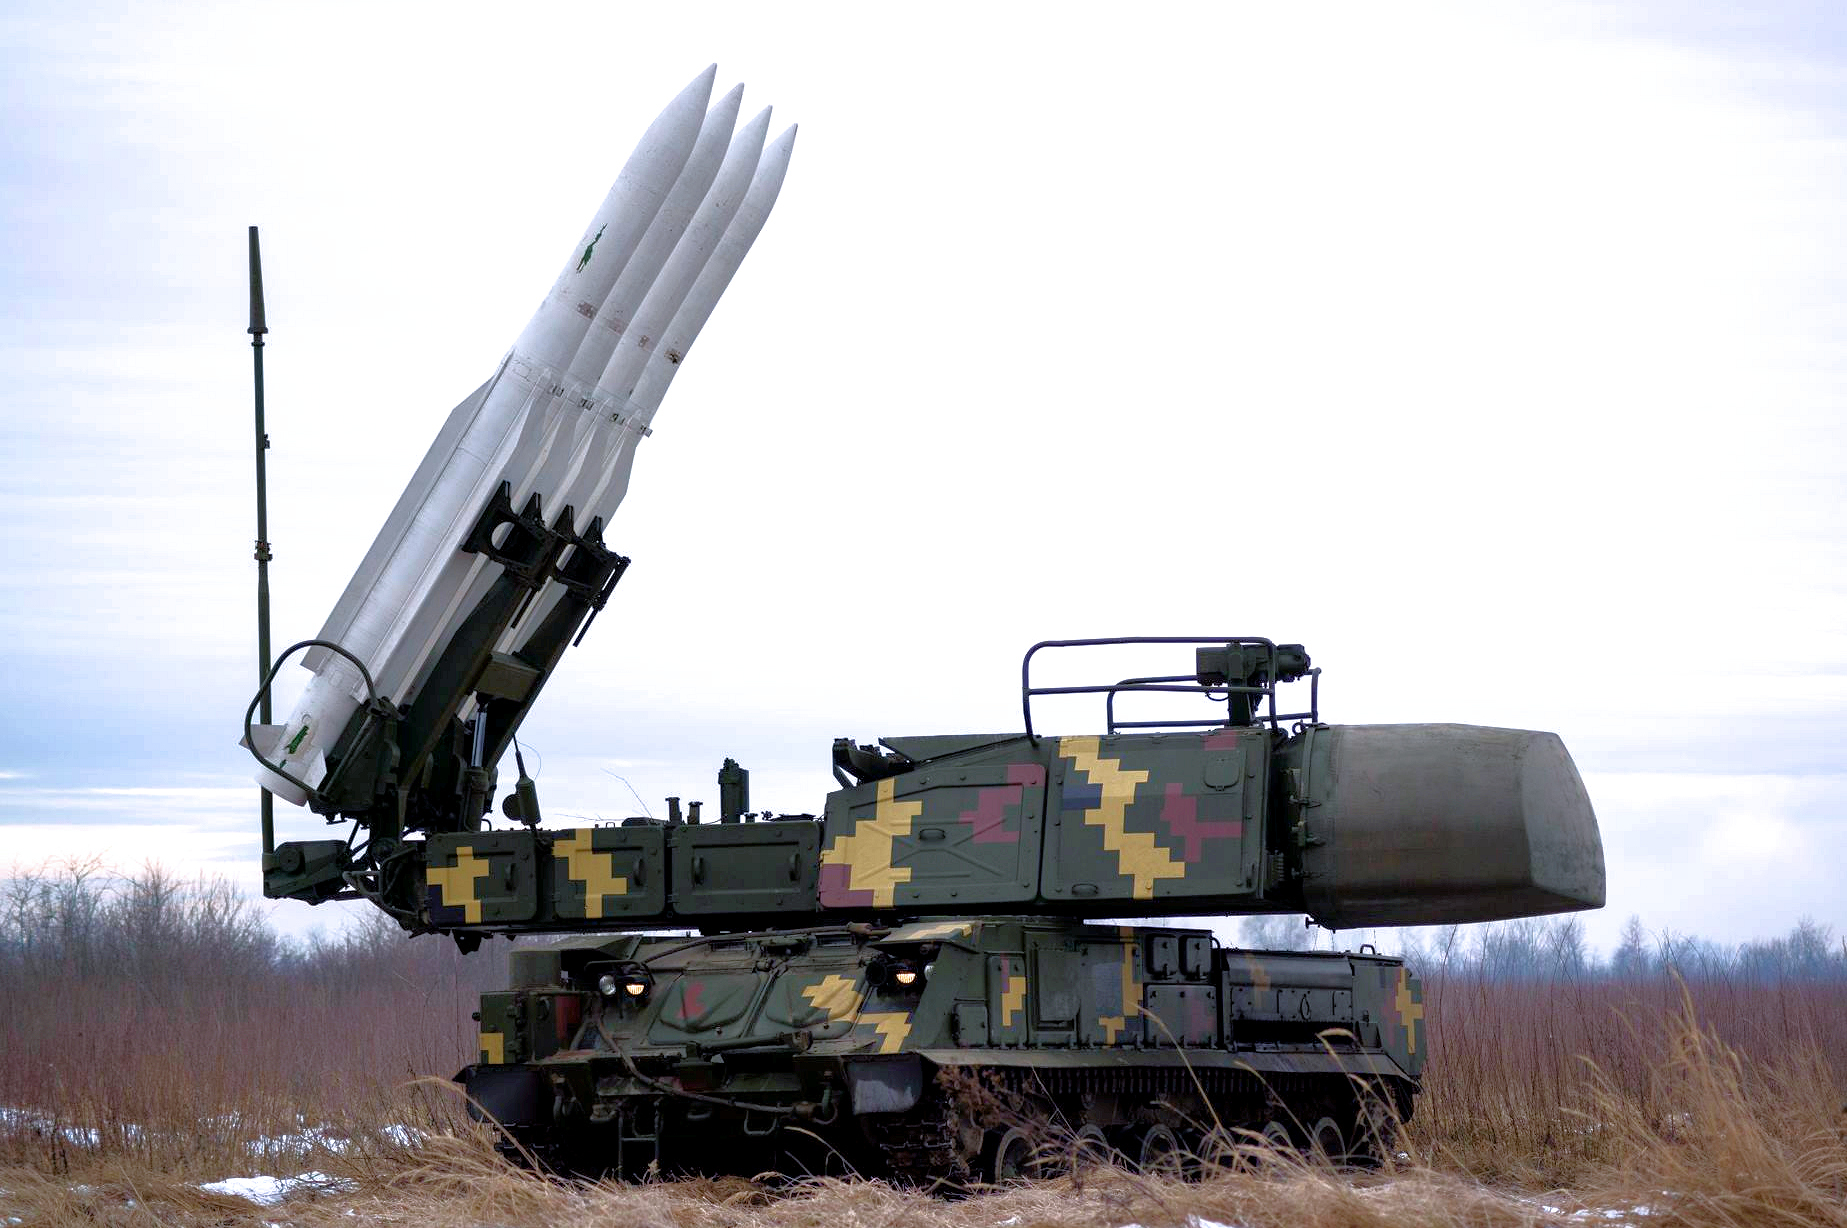 ВСУ проведут ракетные стрельбы у админграницы с Крымом